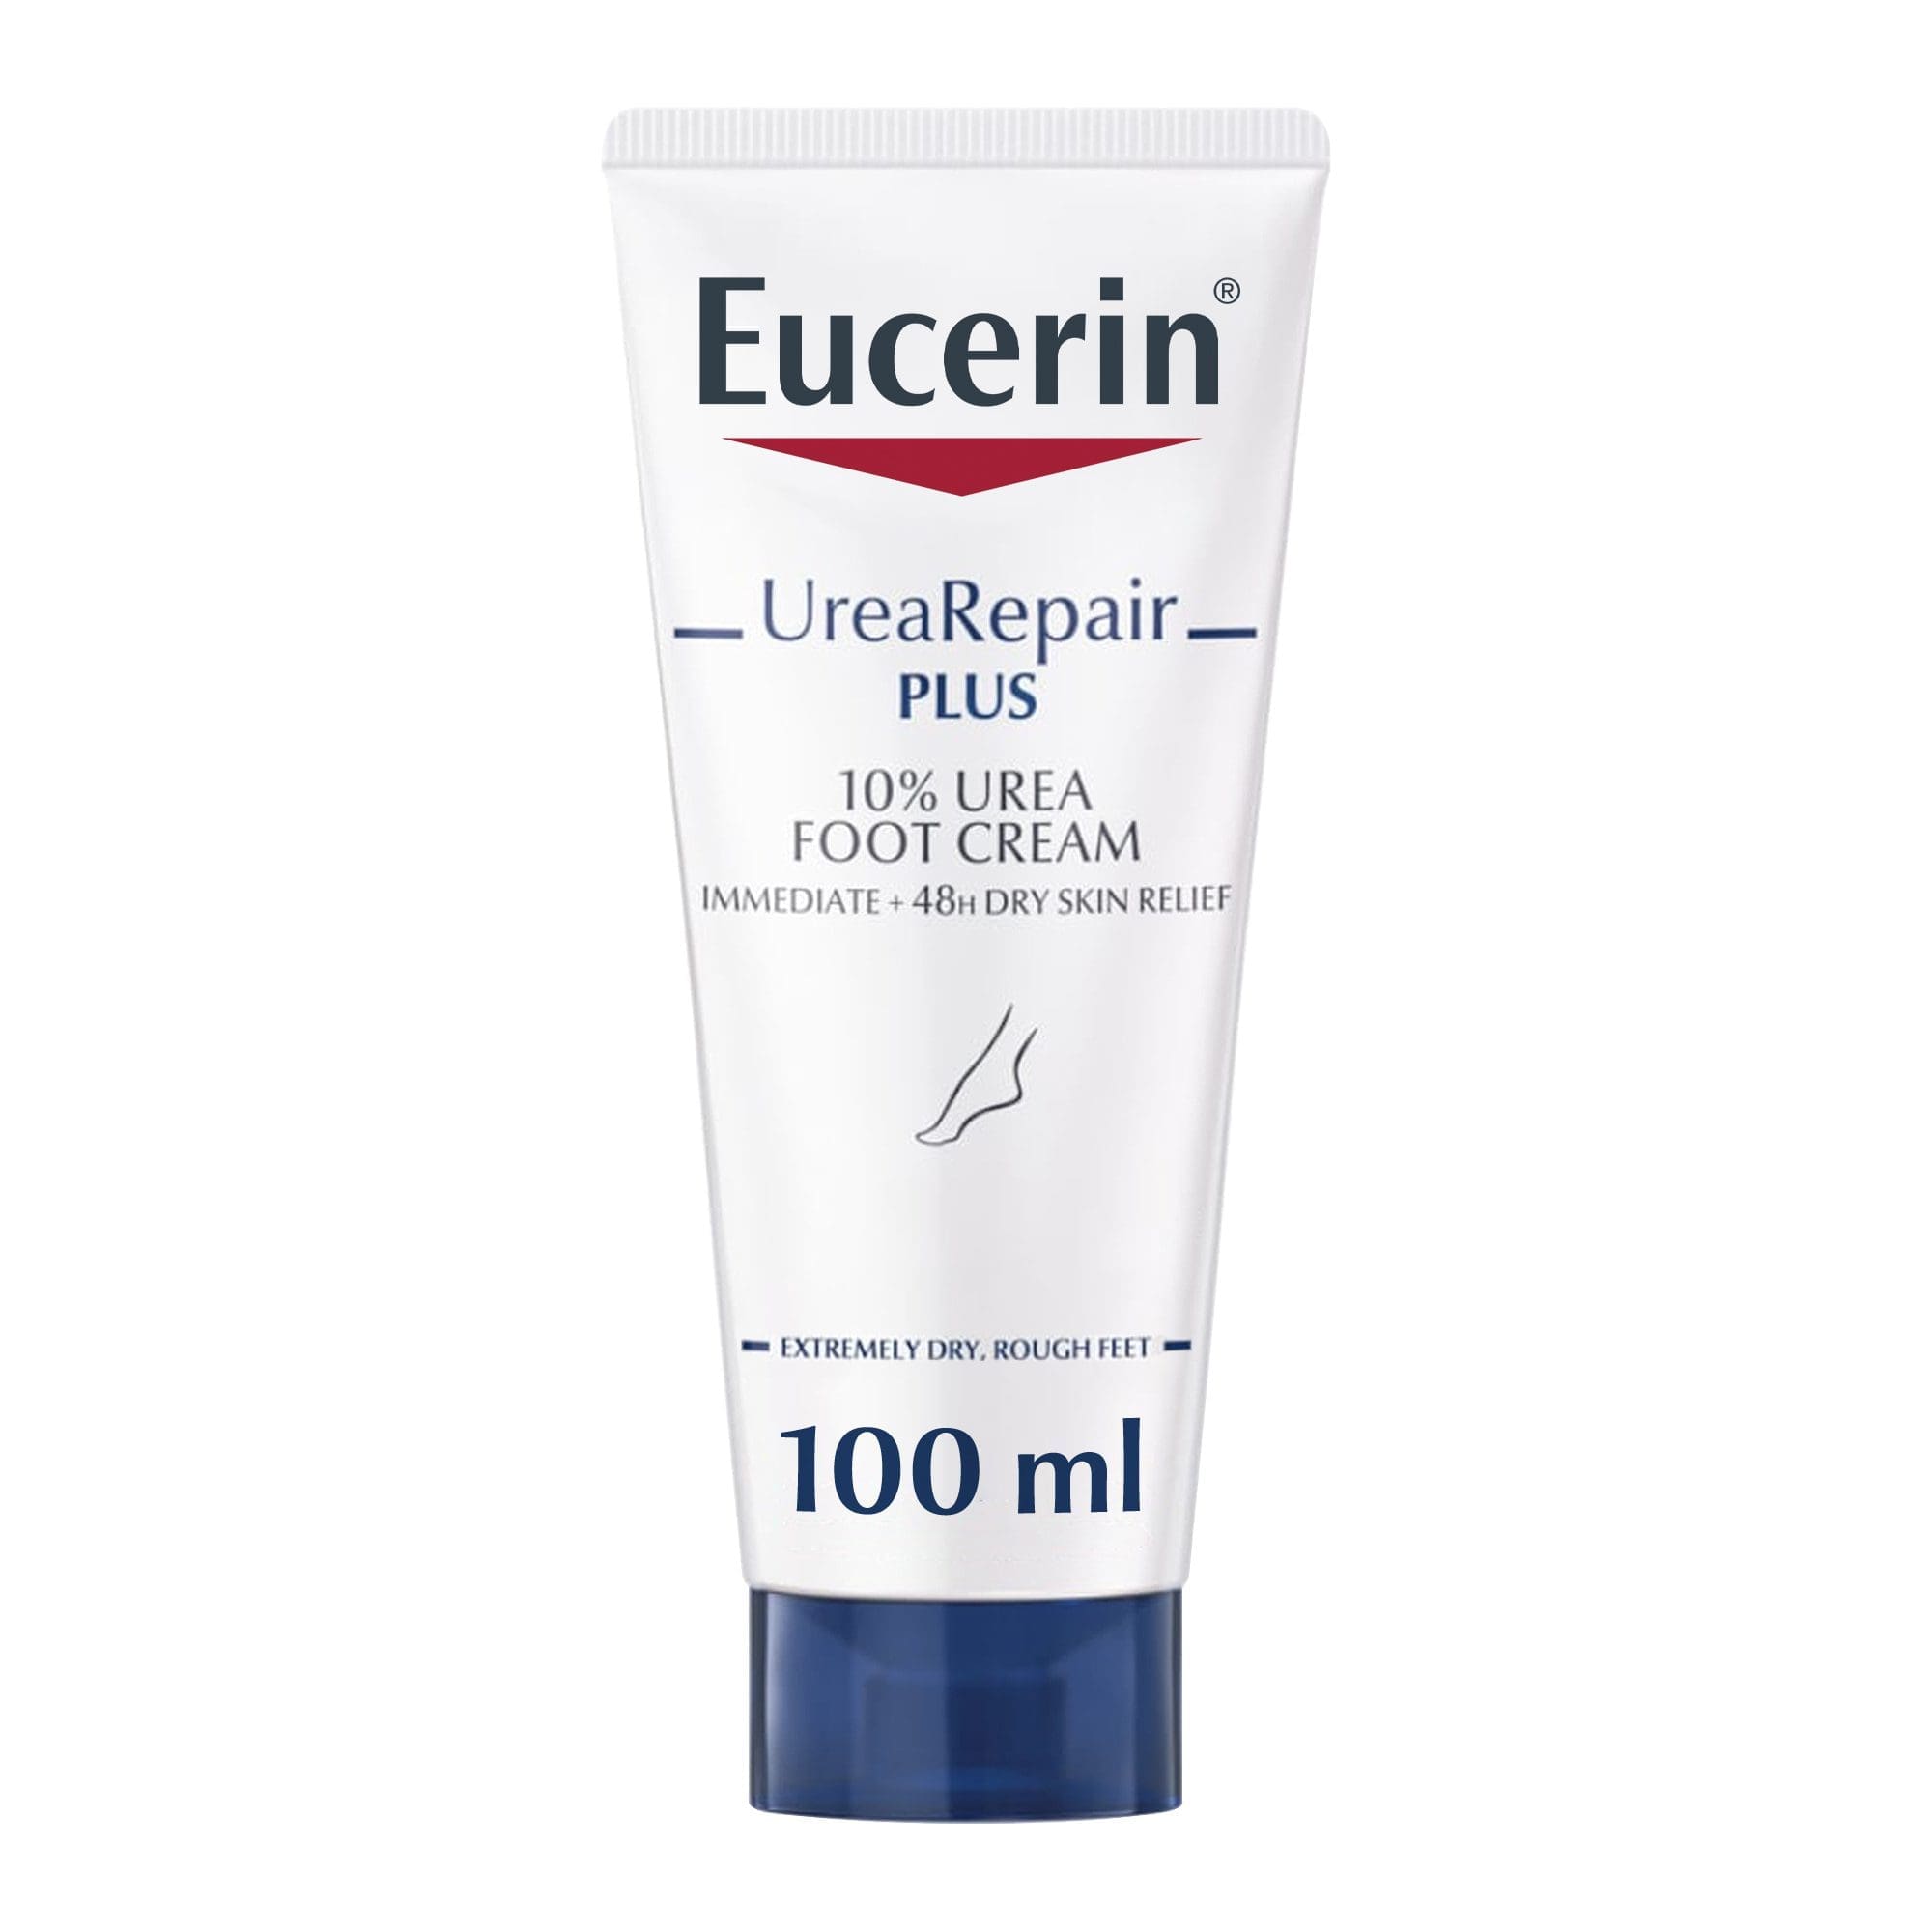 Eucerin Urea Repair Plus 10% Urea Foot Cream, 100ml